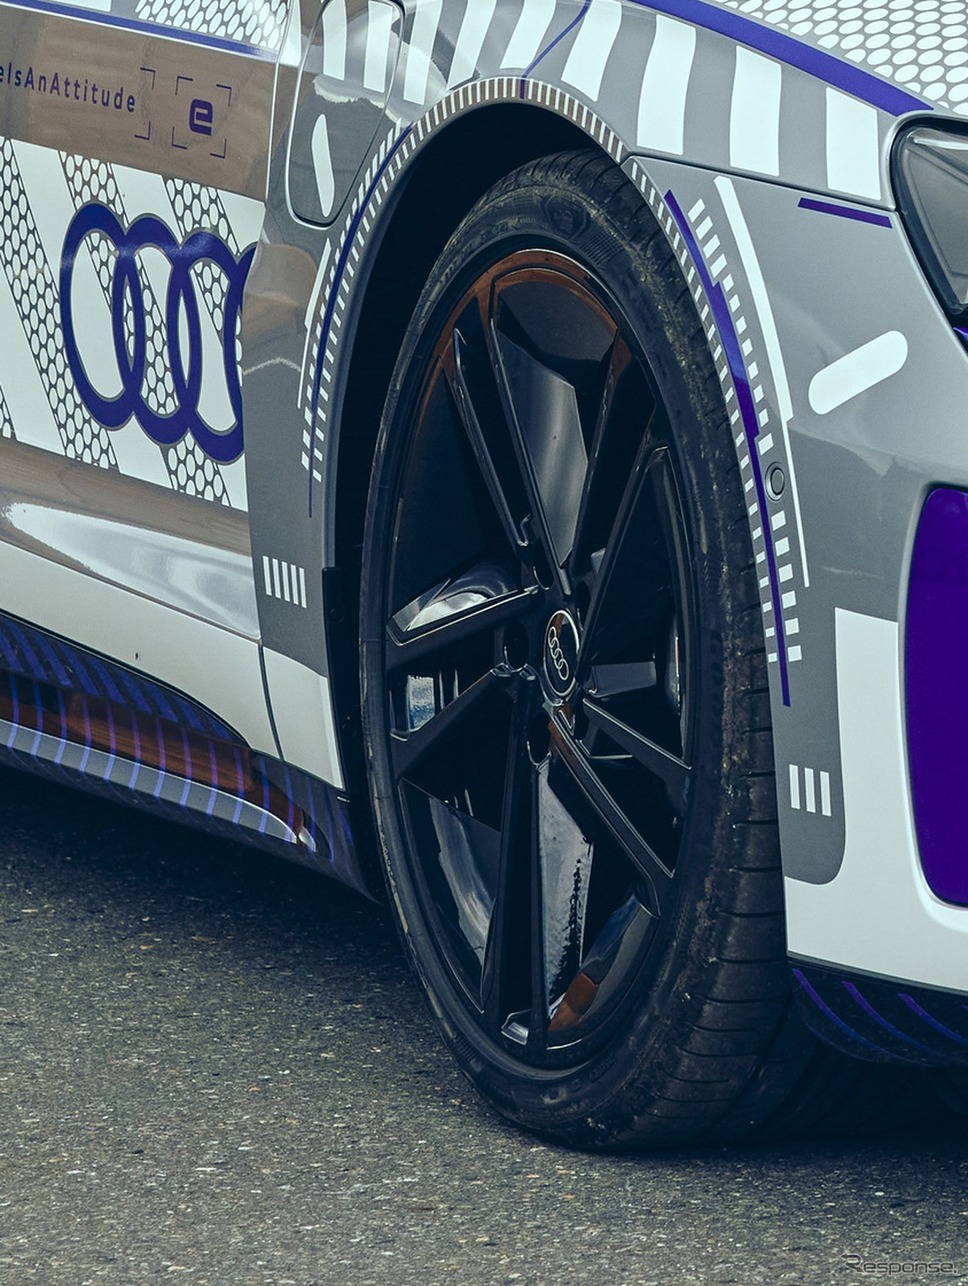 アウディ RS e-tron GT の「アイス・レース・エディション」《photo by Audi》